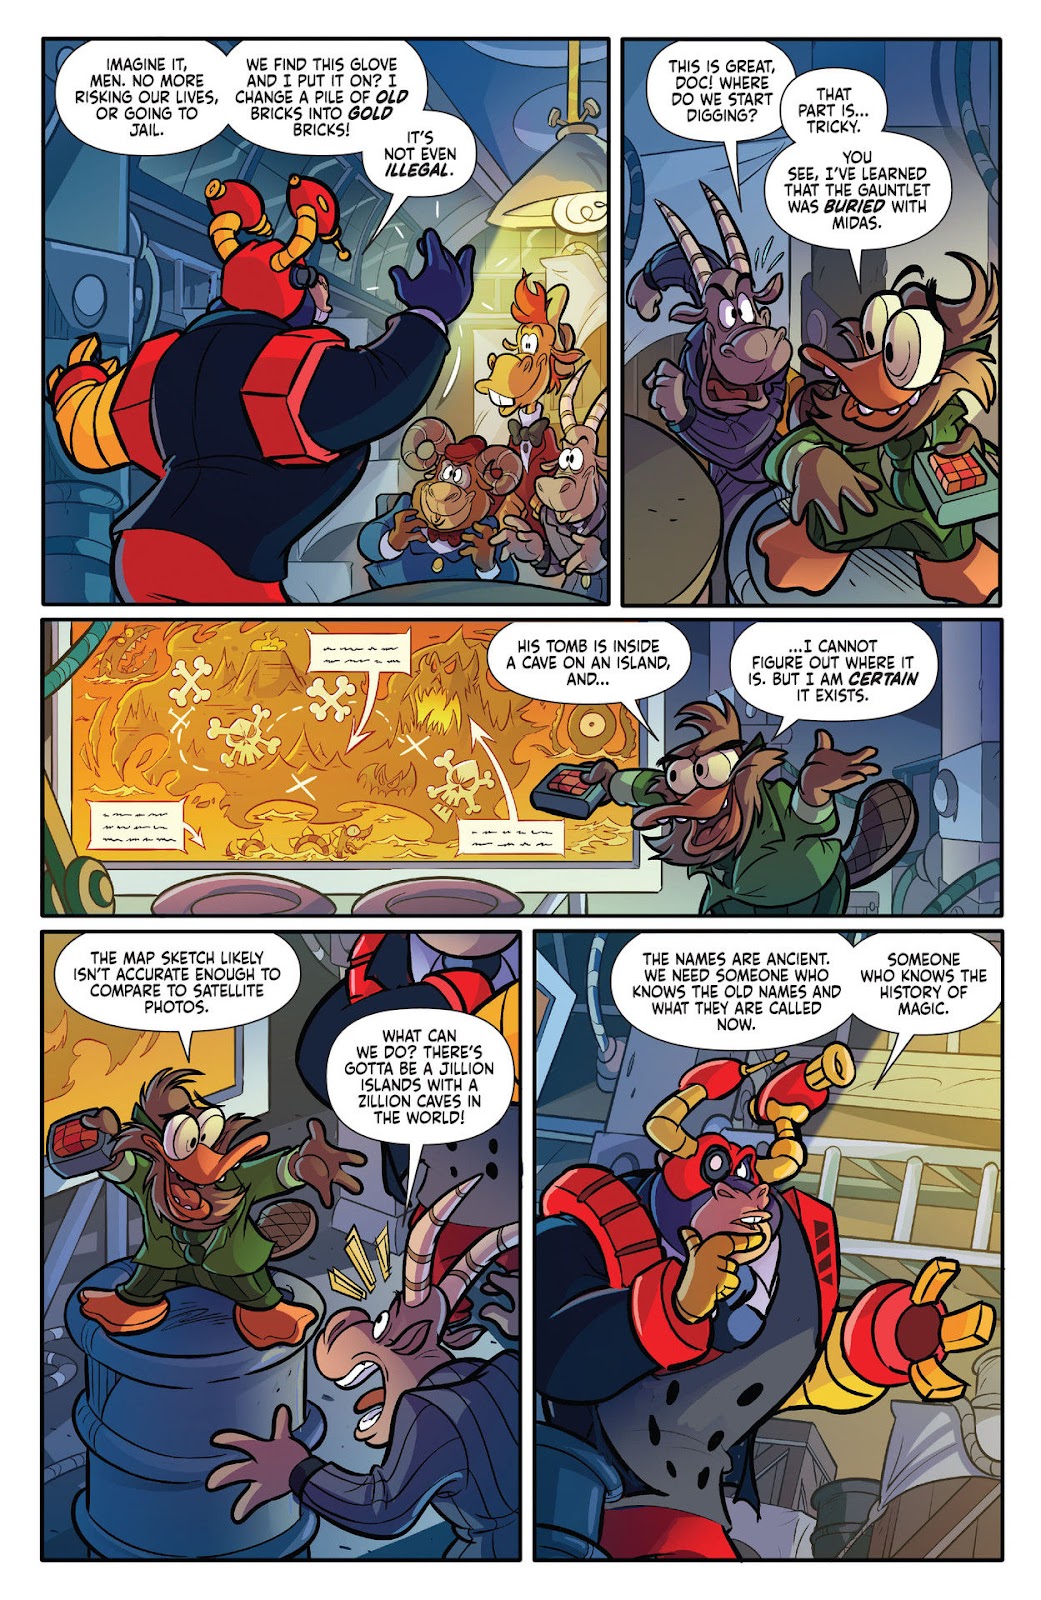 Darkwing Duck: Negaduck issue 1 - Page 24